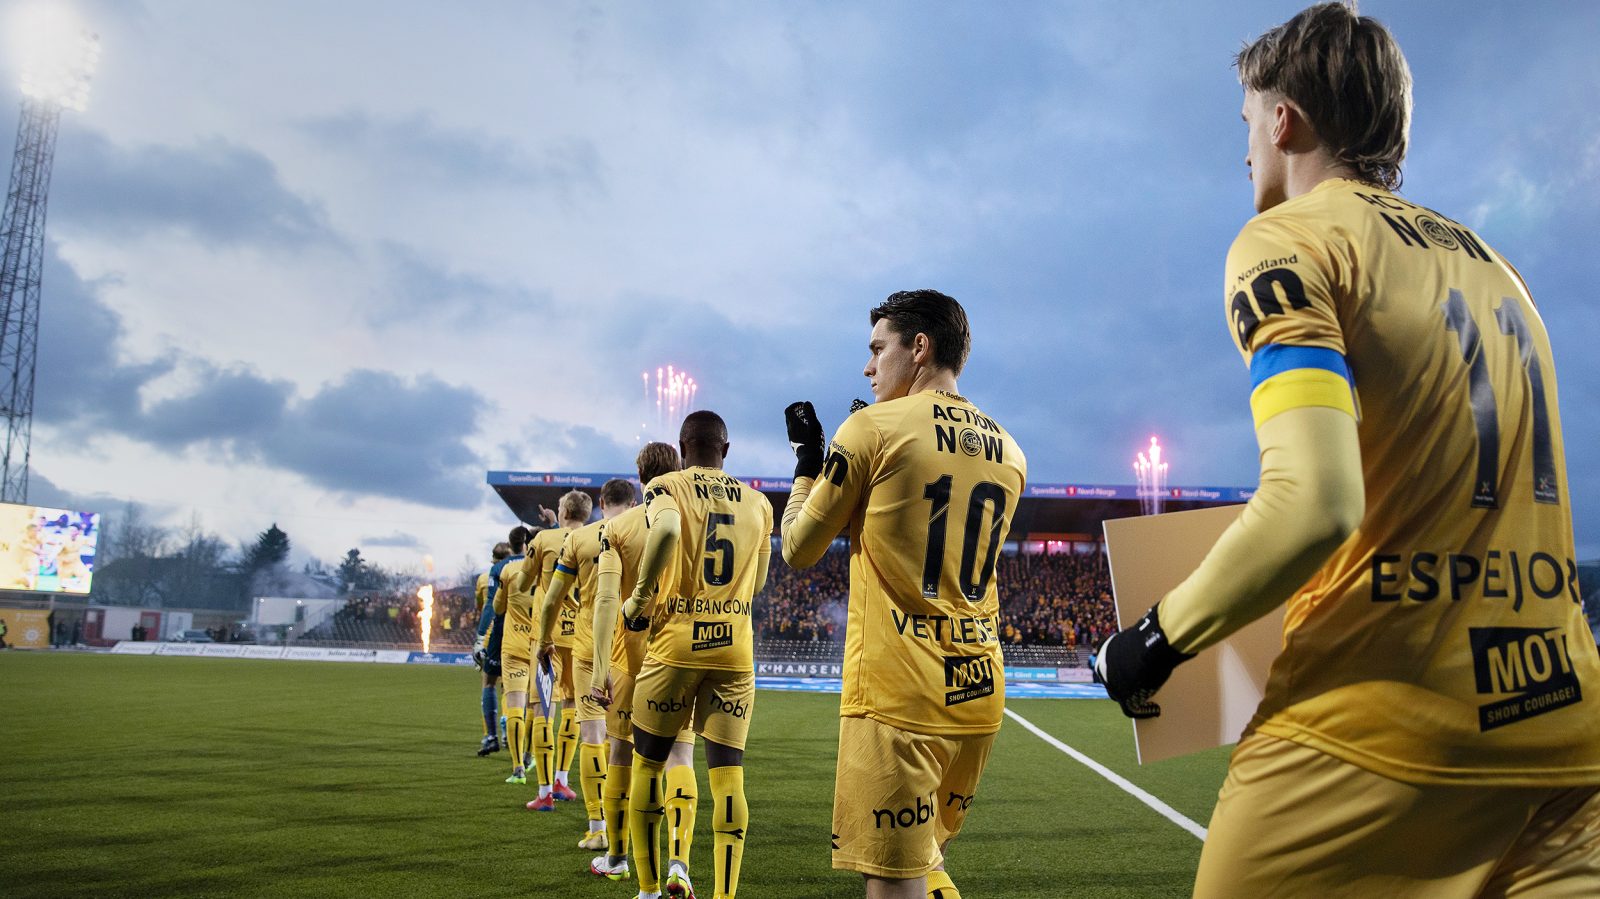 Inmarsch inför Bodø/Glimt mot Rosenborg i den norska premiären